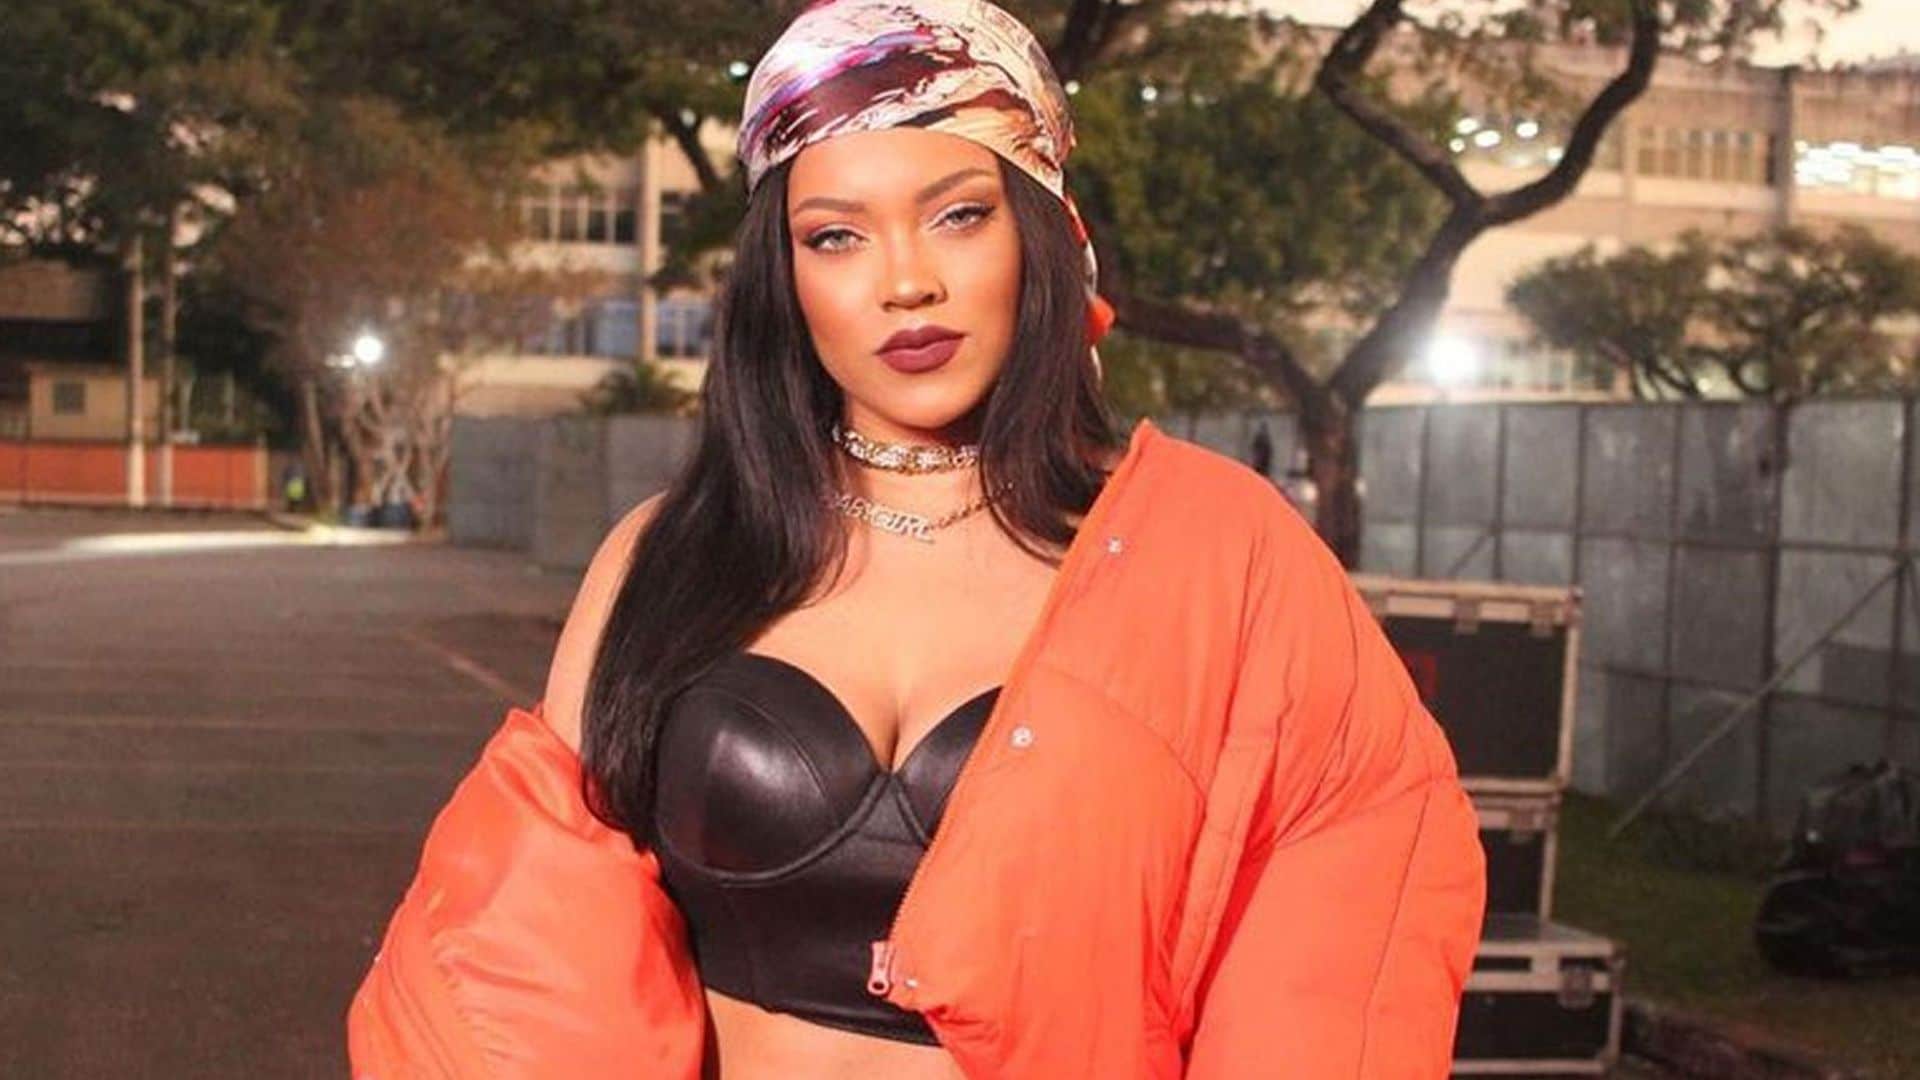 Descubrimos a la doble de Rihanna: te va a costar encontrar las diferencias